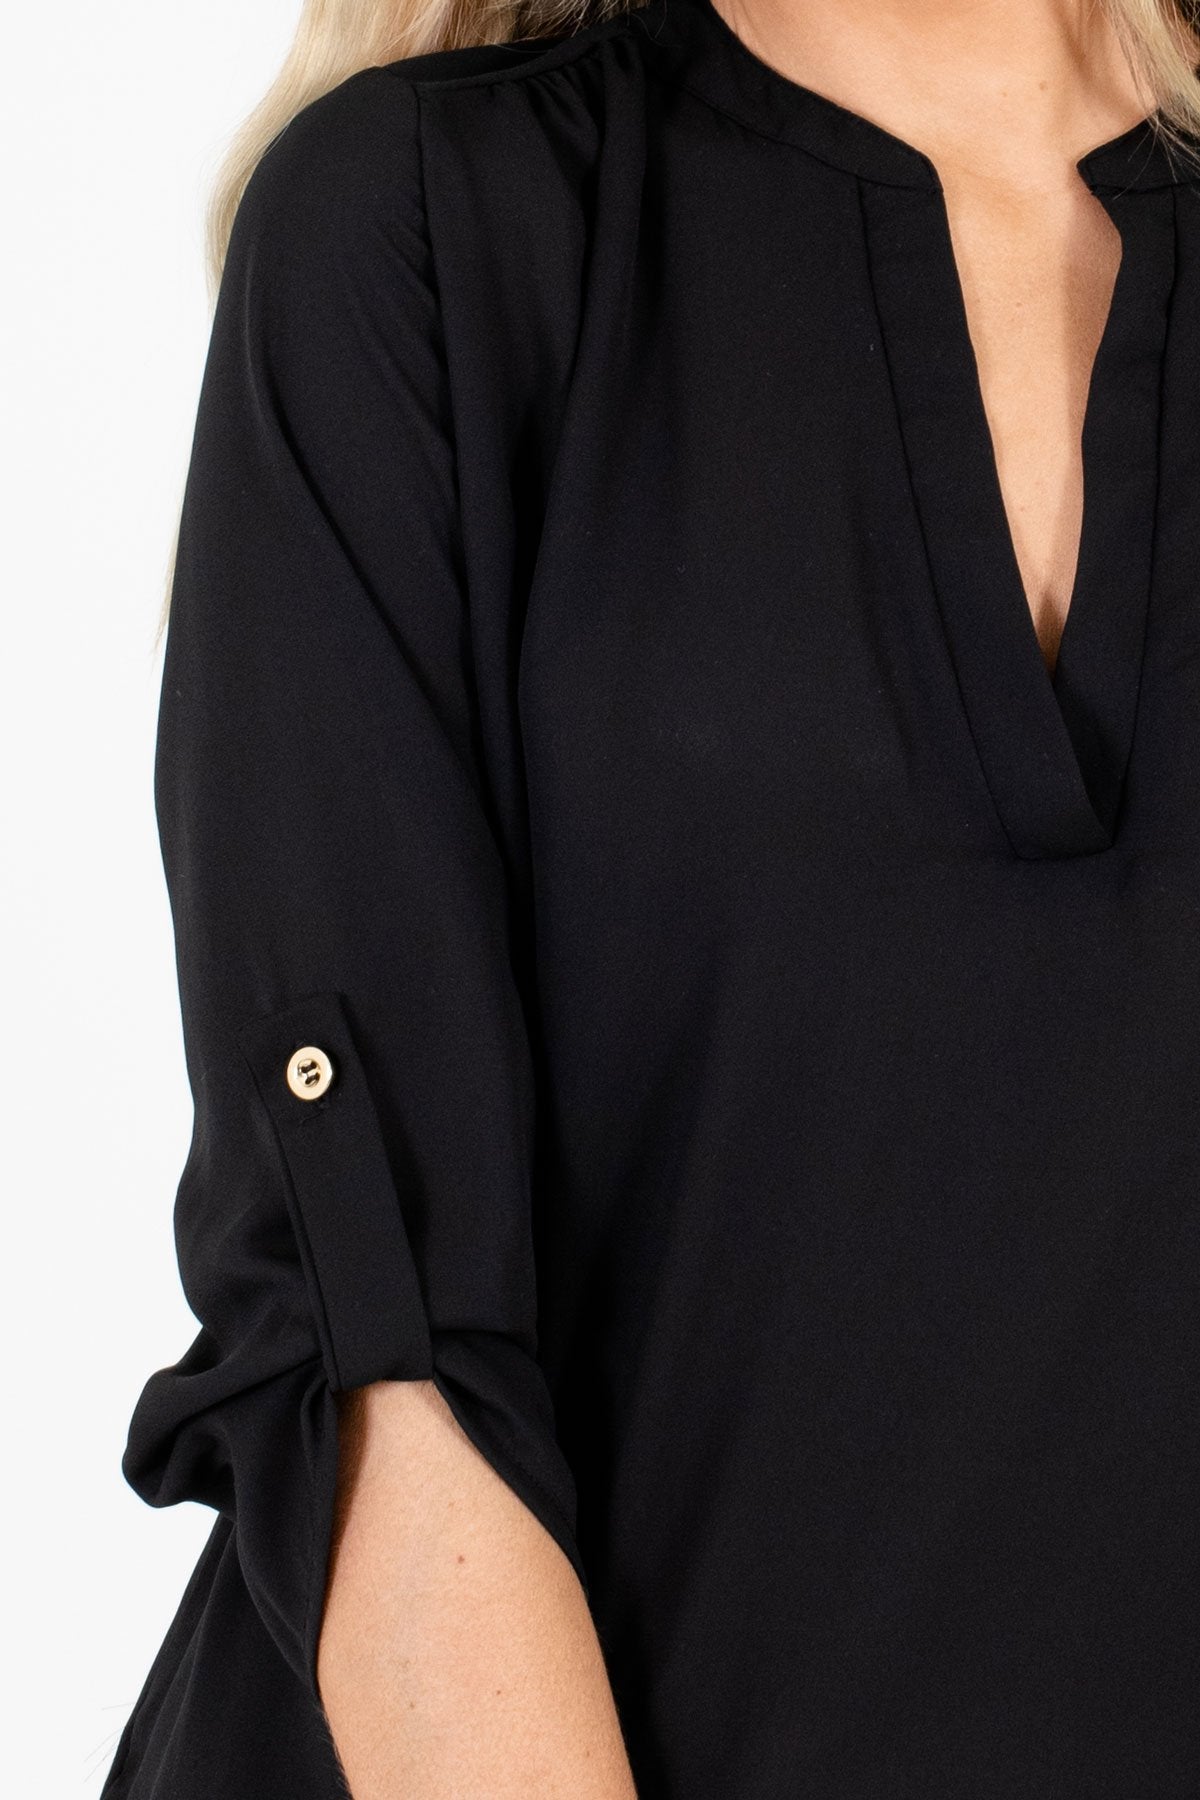 Women's Black 3/4 Length Sleeve Boutique Blouse